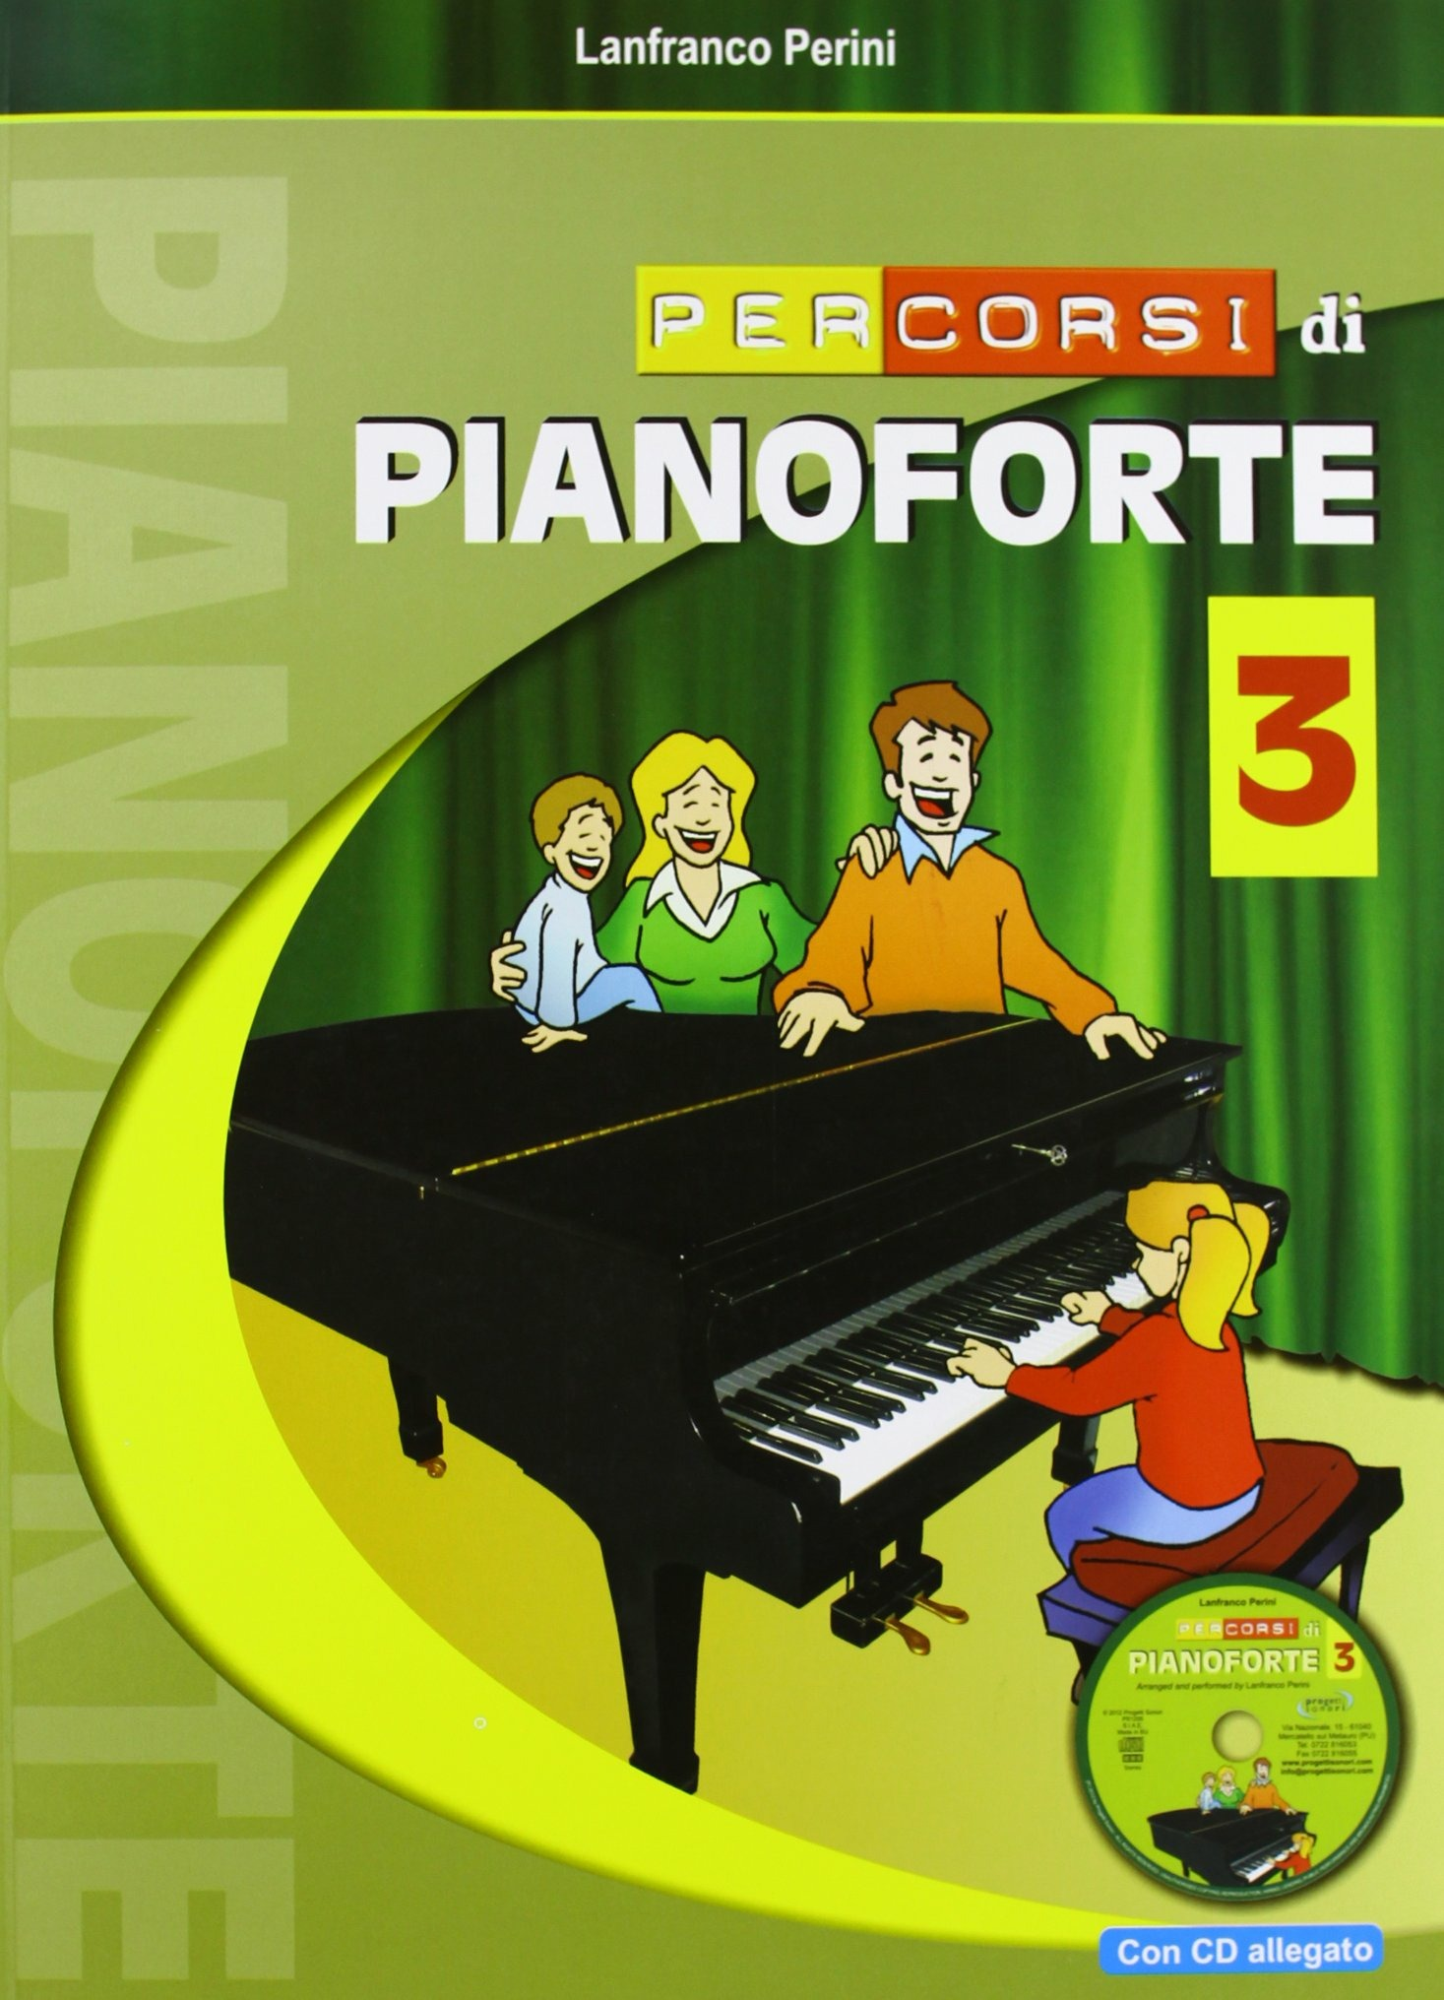 Libri Lanfranco Perini - Percorsi Di Pianoforte. Con CD NUOVO SIGILLATO, EDIZIONE DEL 23/05/2012 SUBITO DISPONIBILE